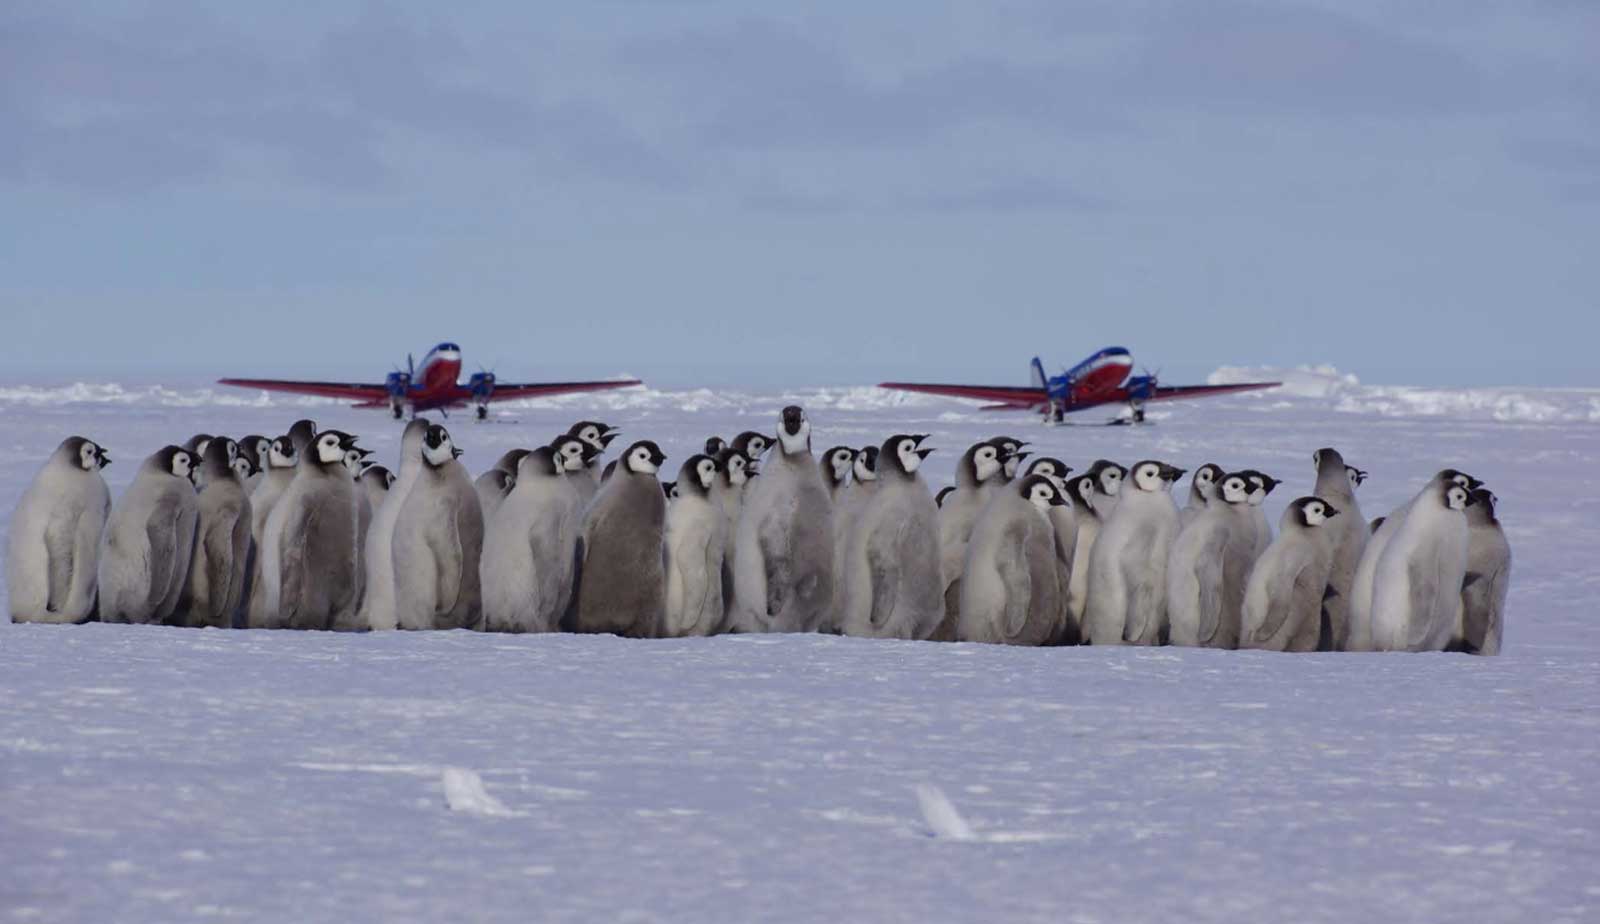 VFT Basler planes flying over penguins